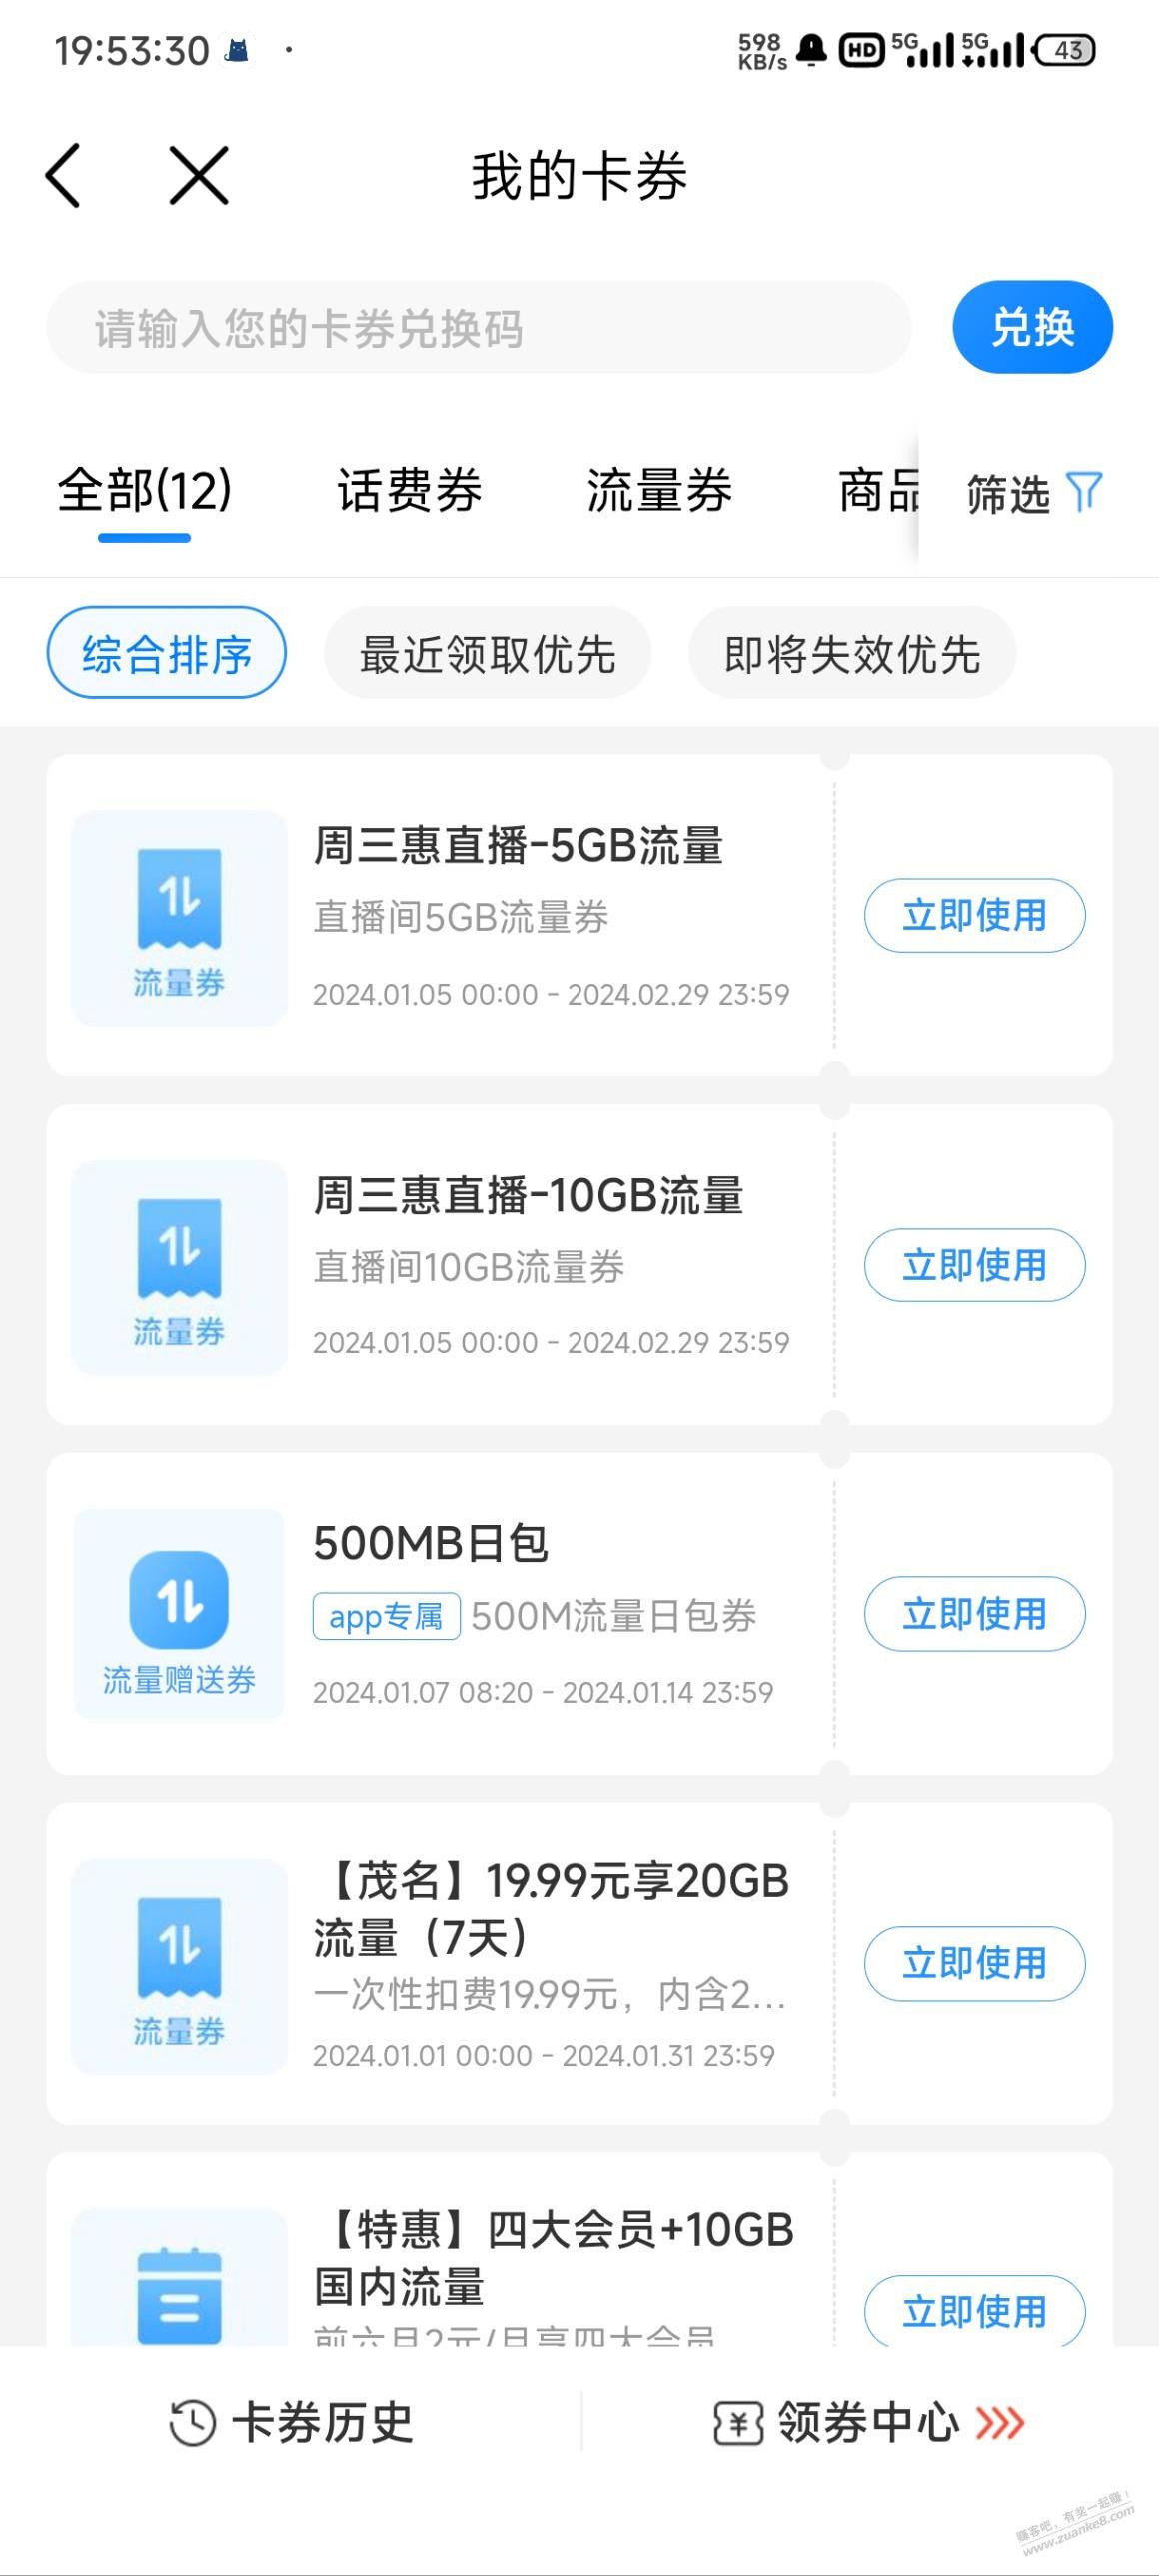 广东移动5G+10G流量-惠小助(52huixz.com)